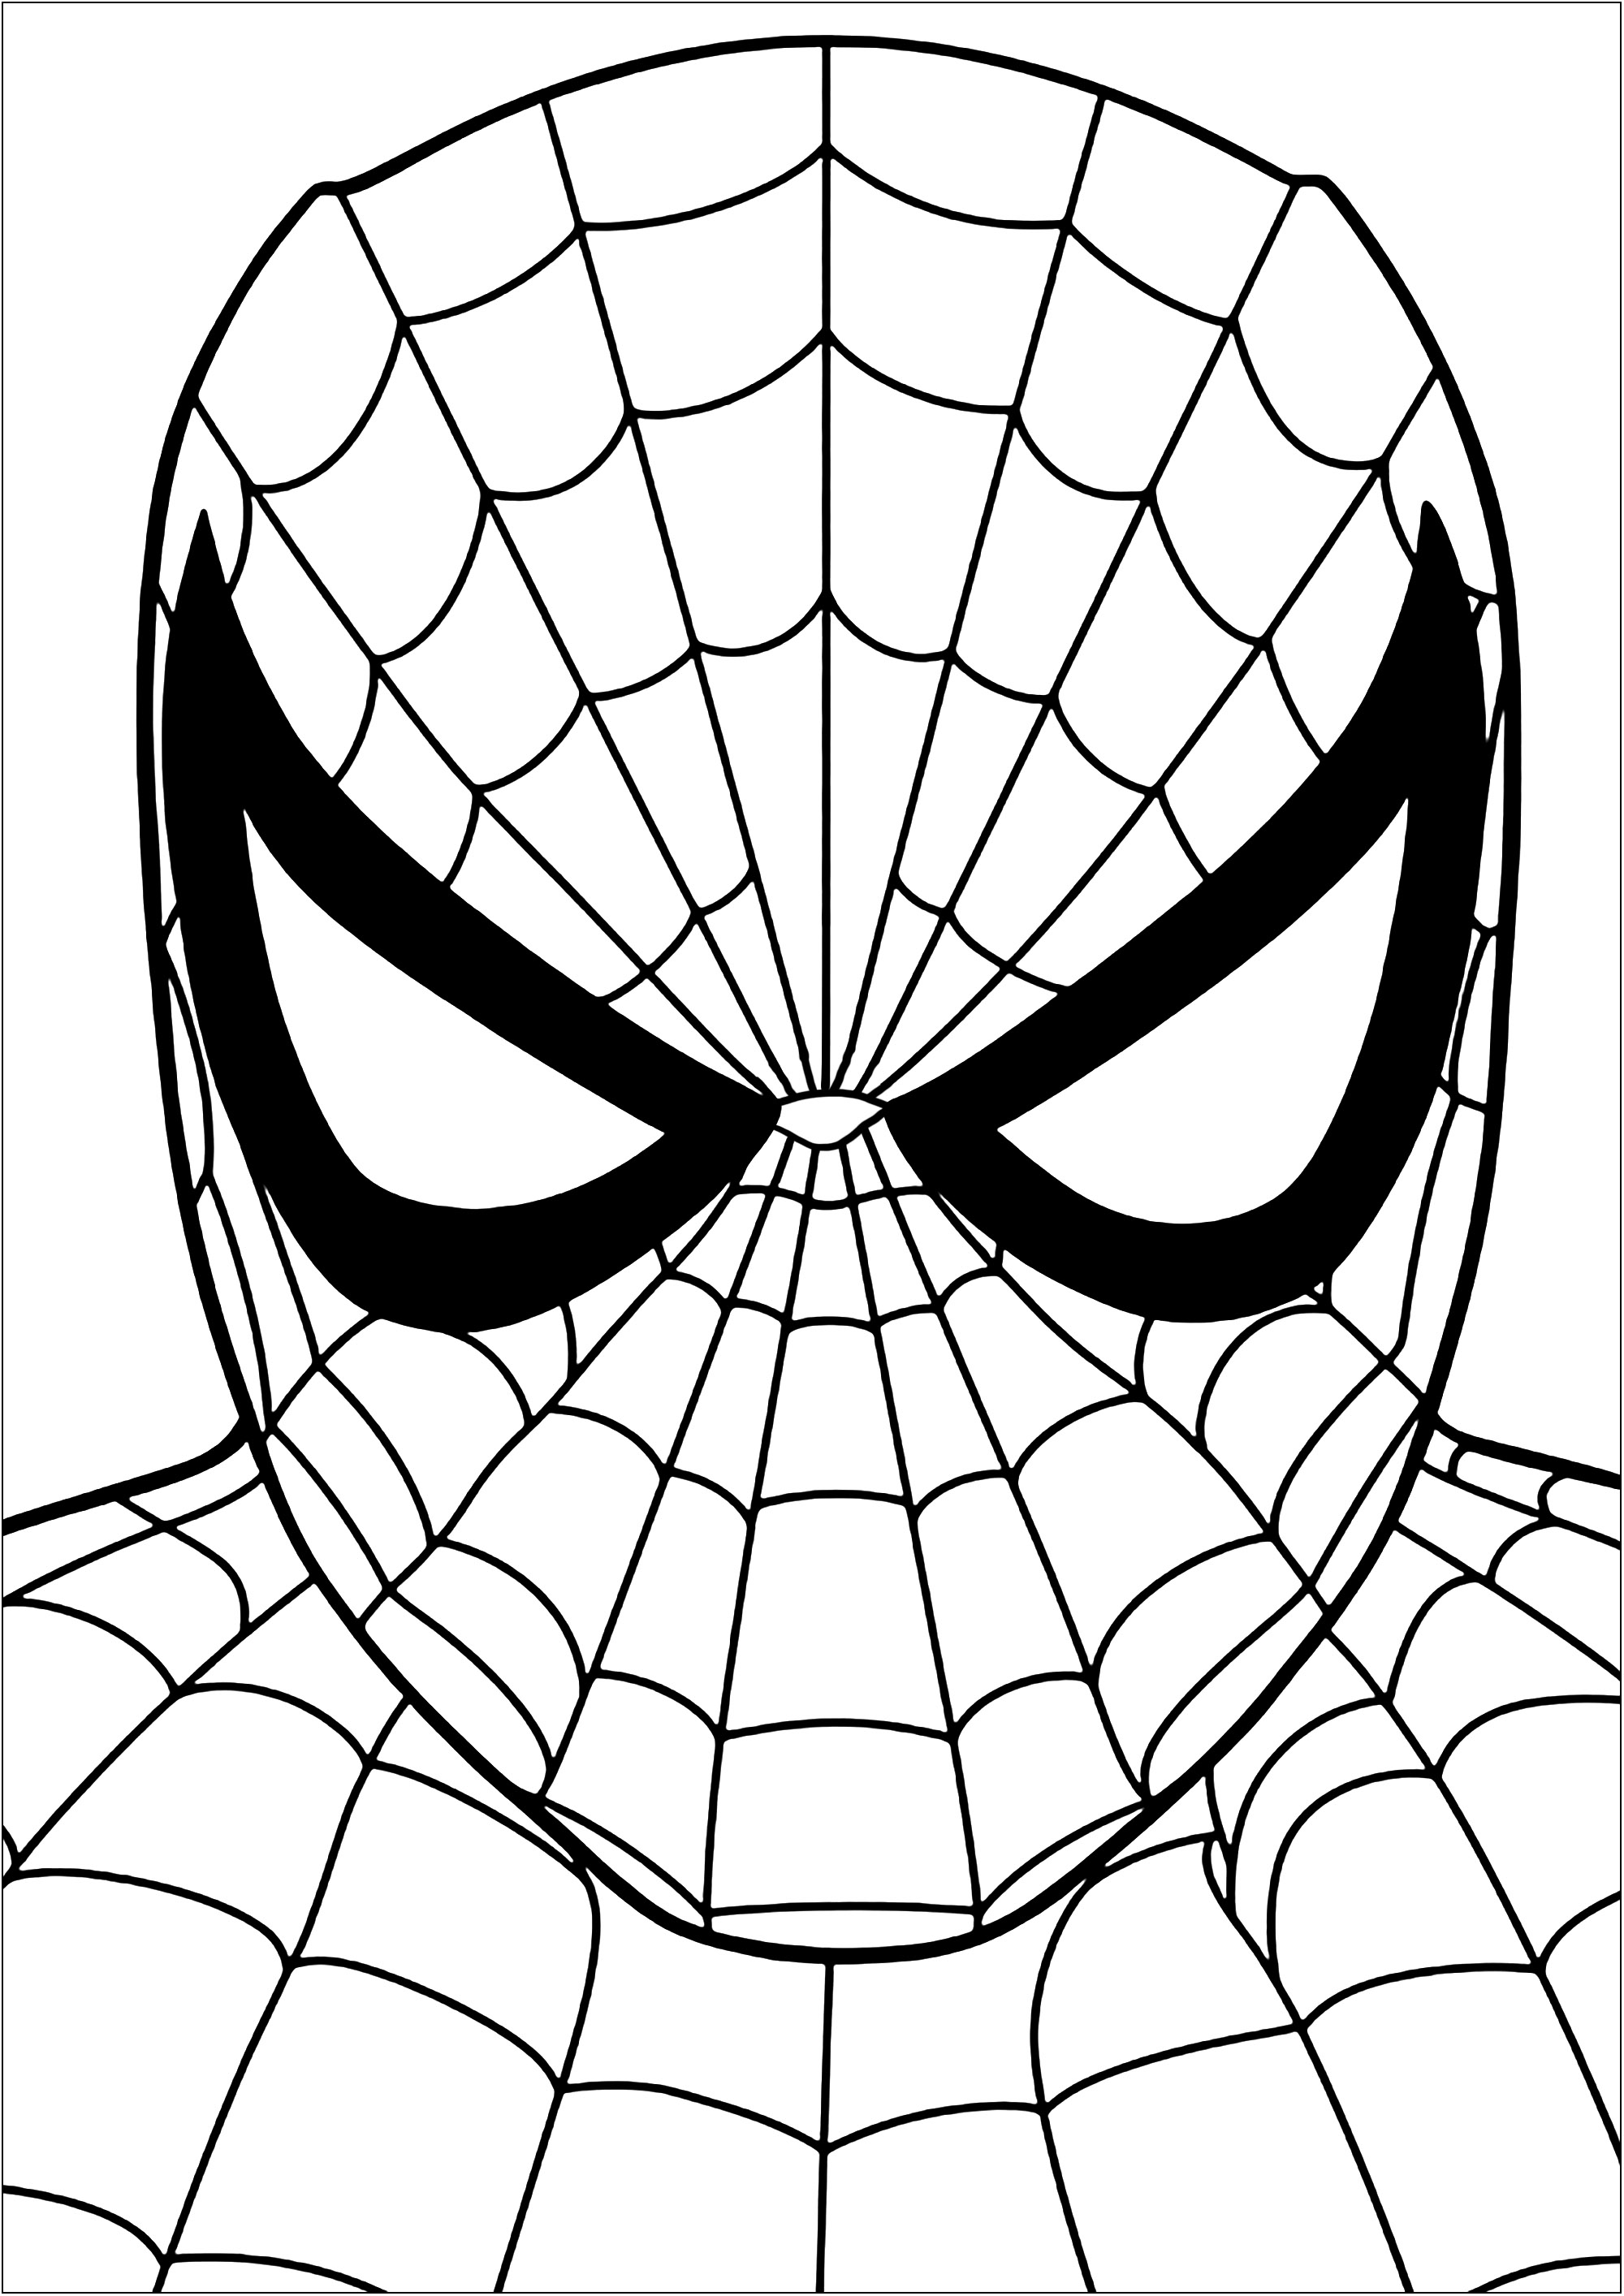 Homem Aranha - Desenho para Colorir